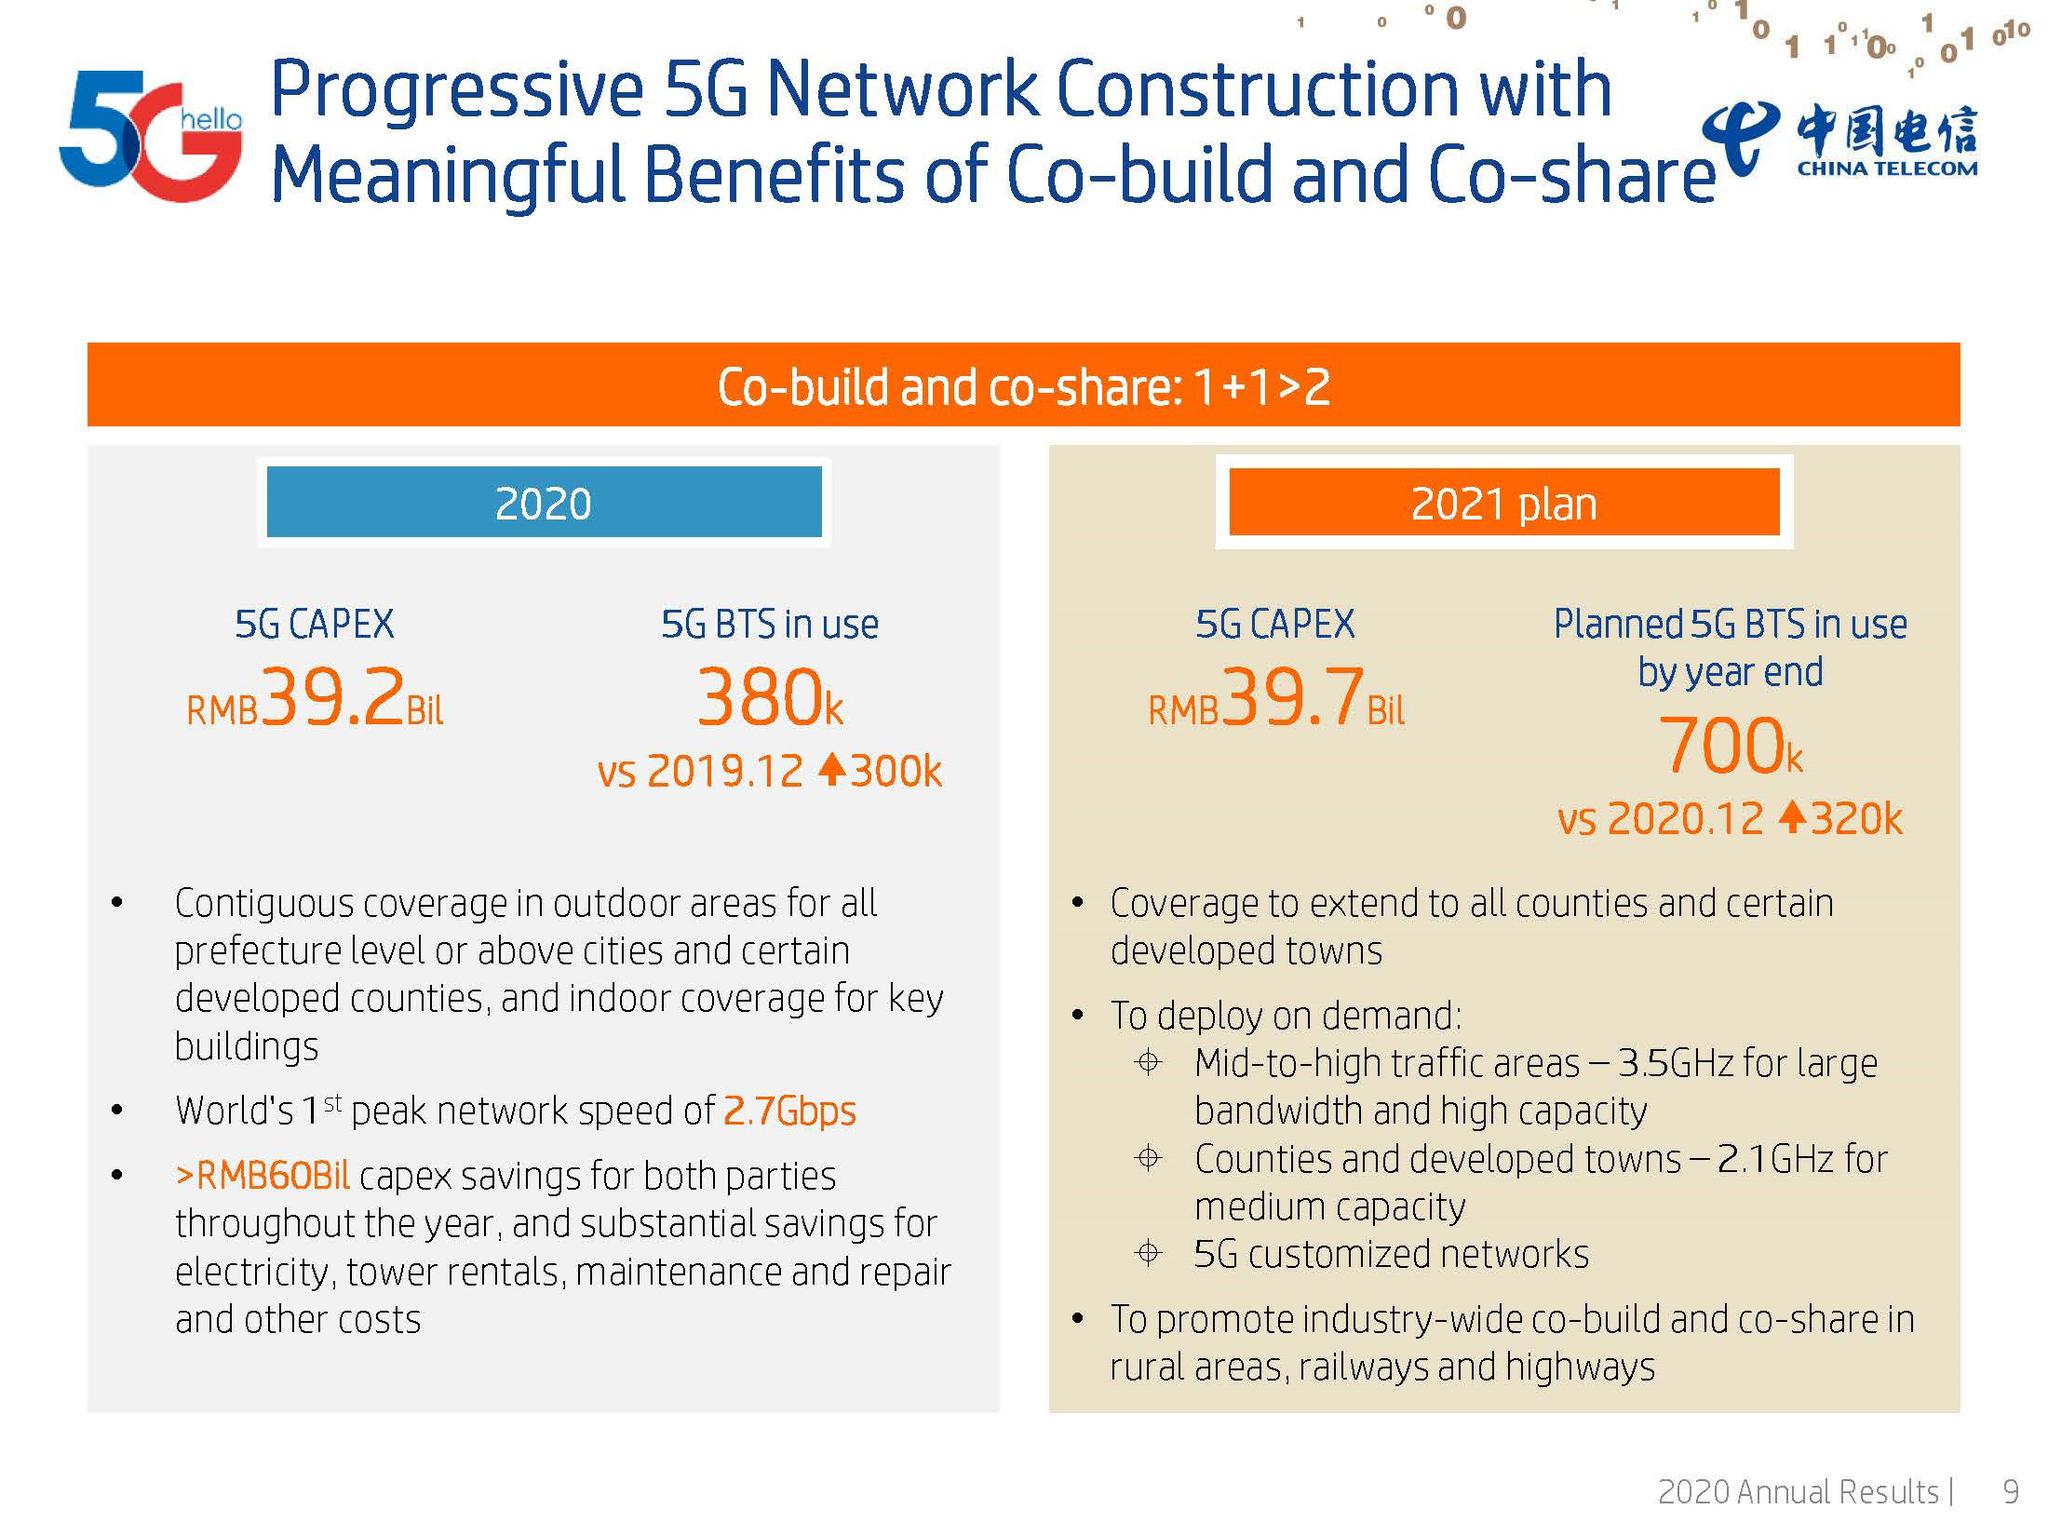 按需部署：中国电信计划2021年开通32万座5G基站